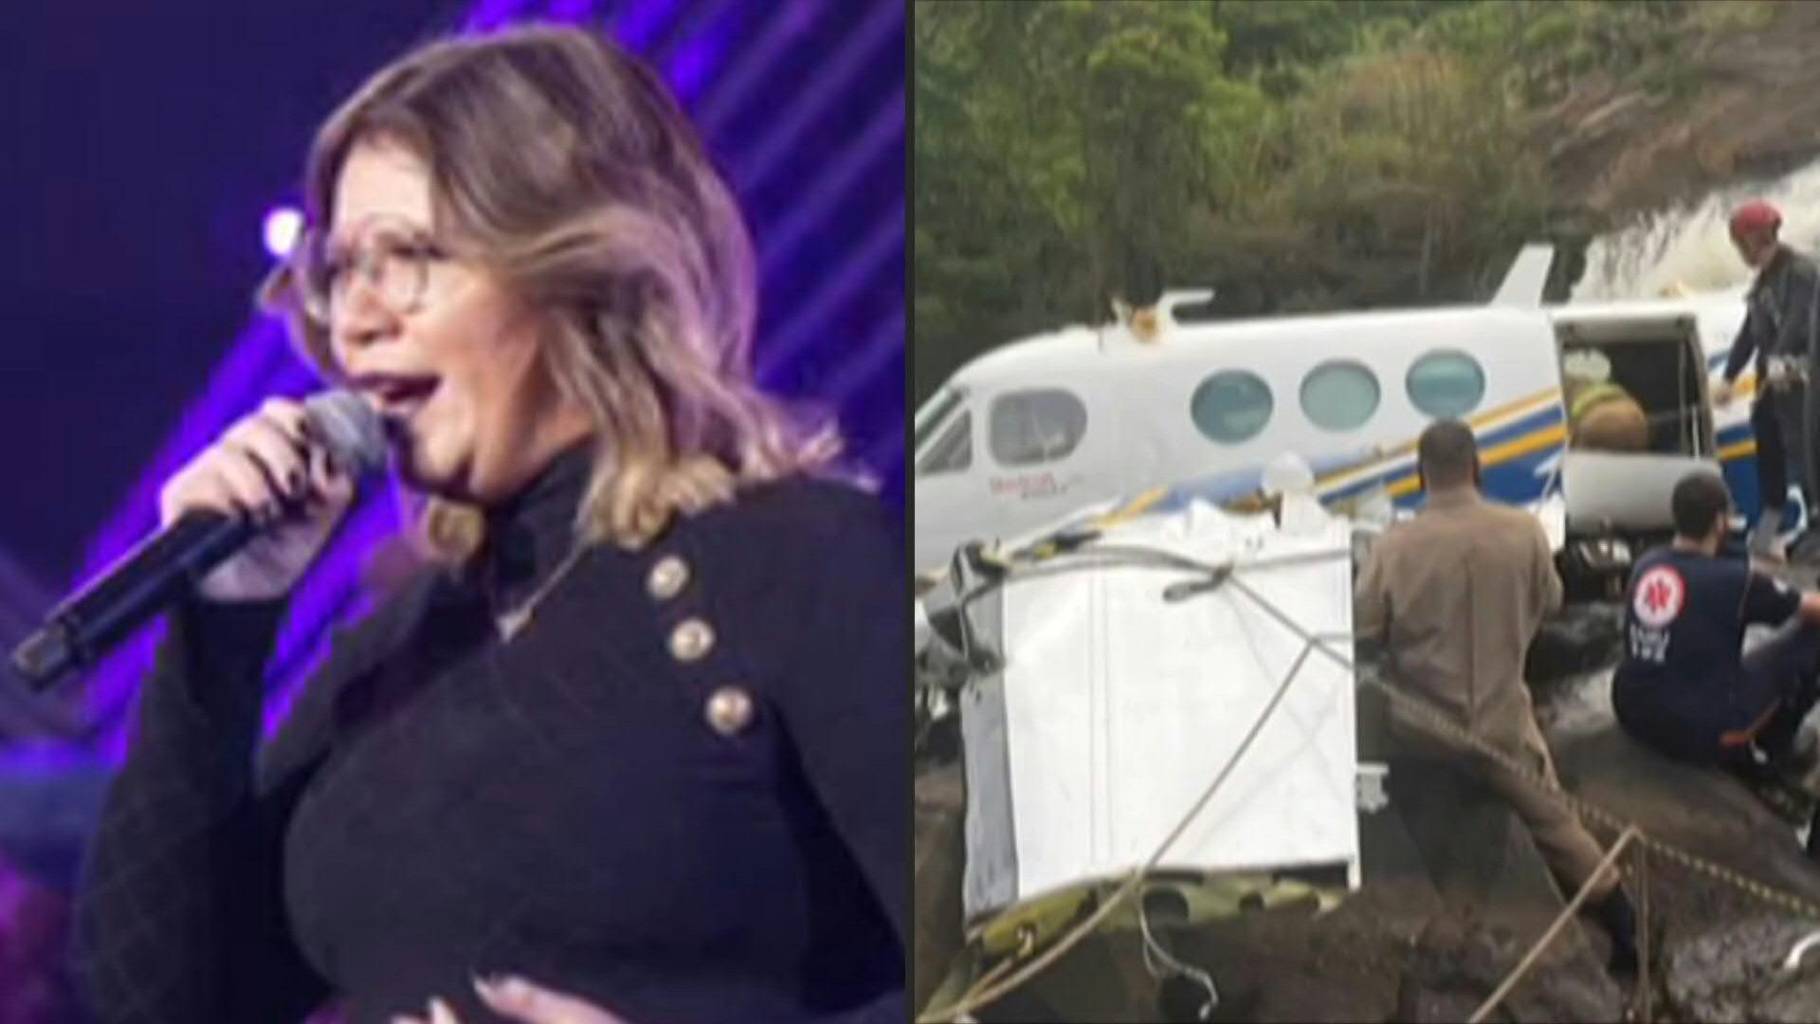 Death in plane crash of singer Marília Mendonça shocks Brazil